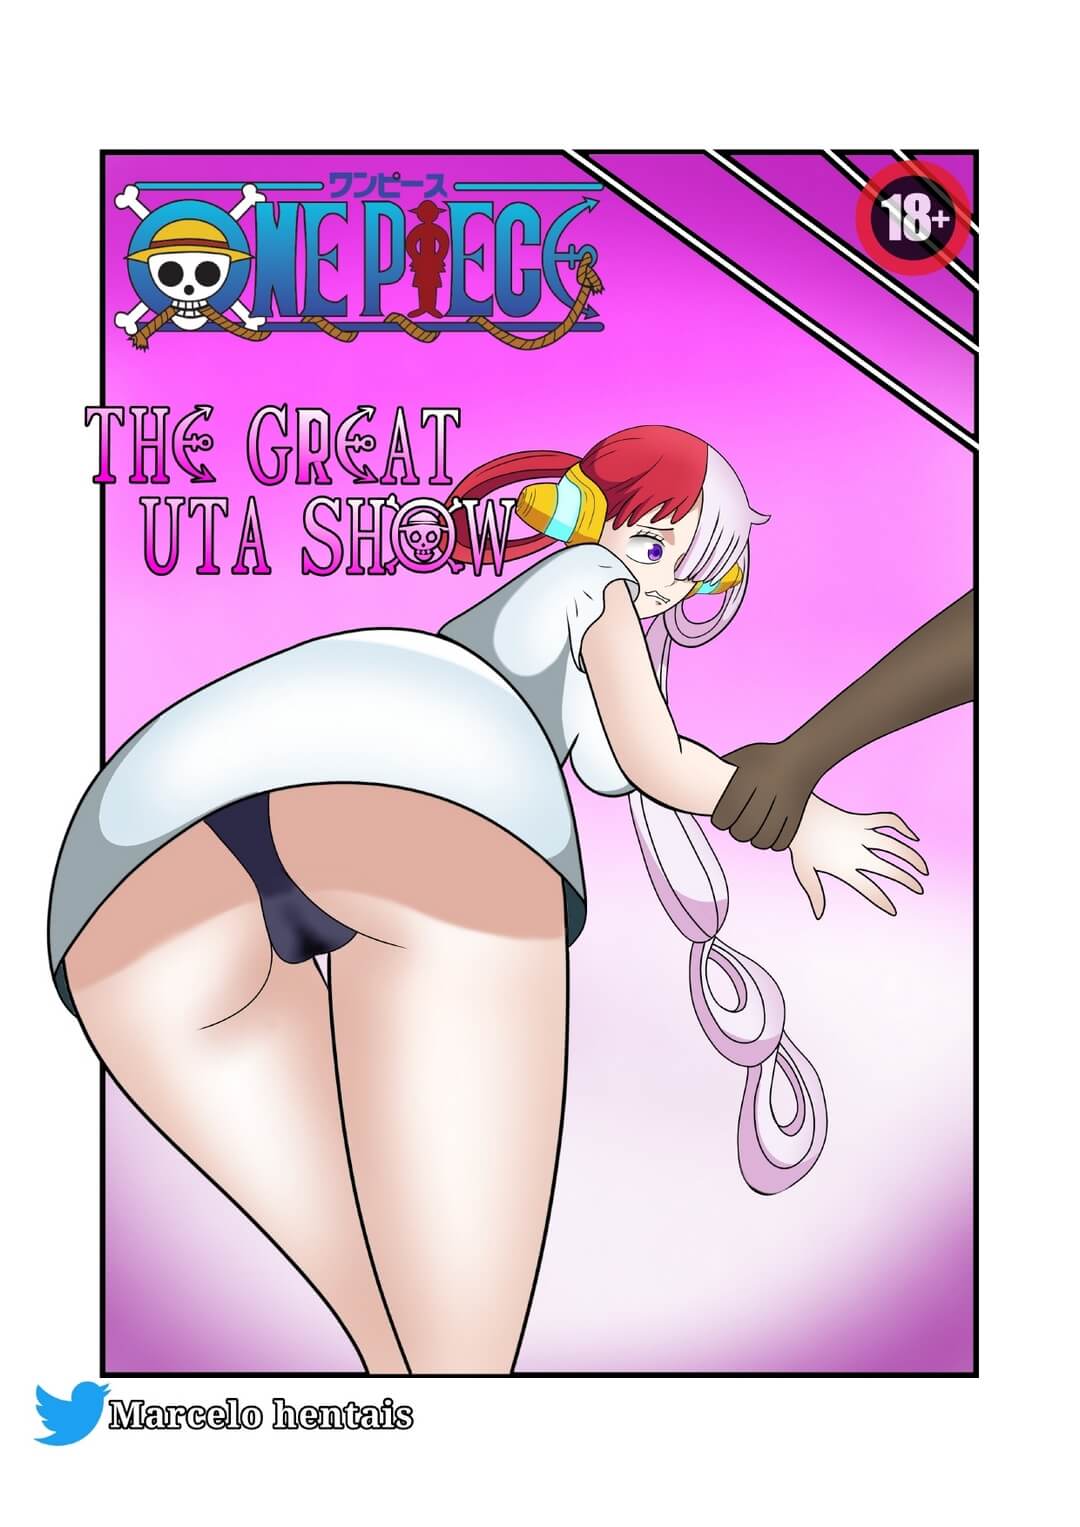 The Great Uta Show Marcelo Hentais Comic Porno 01